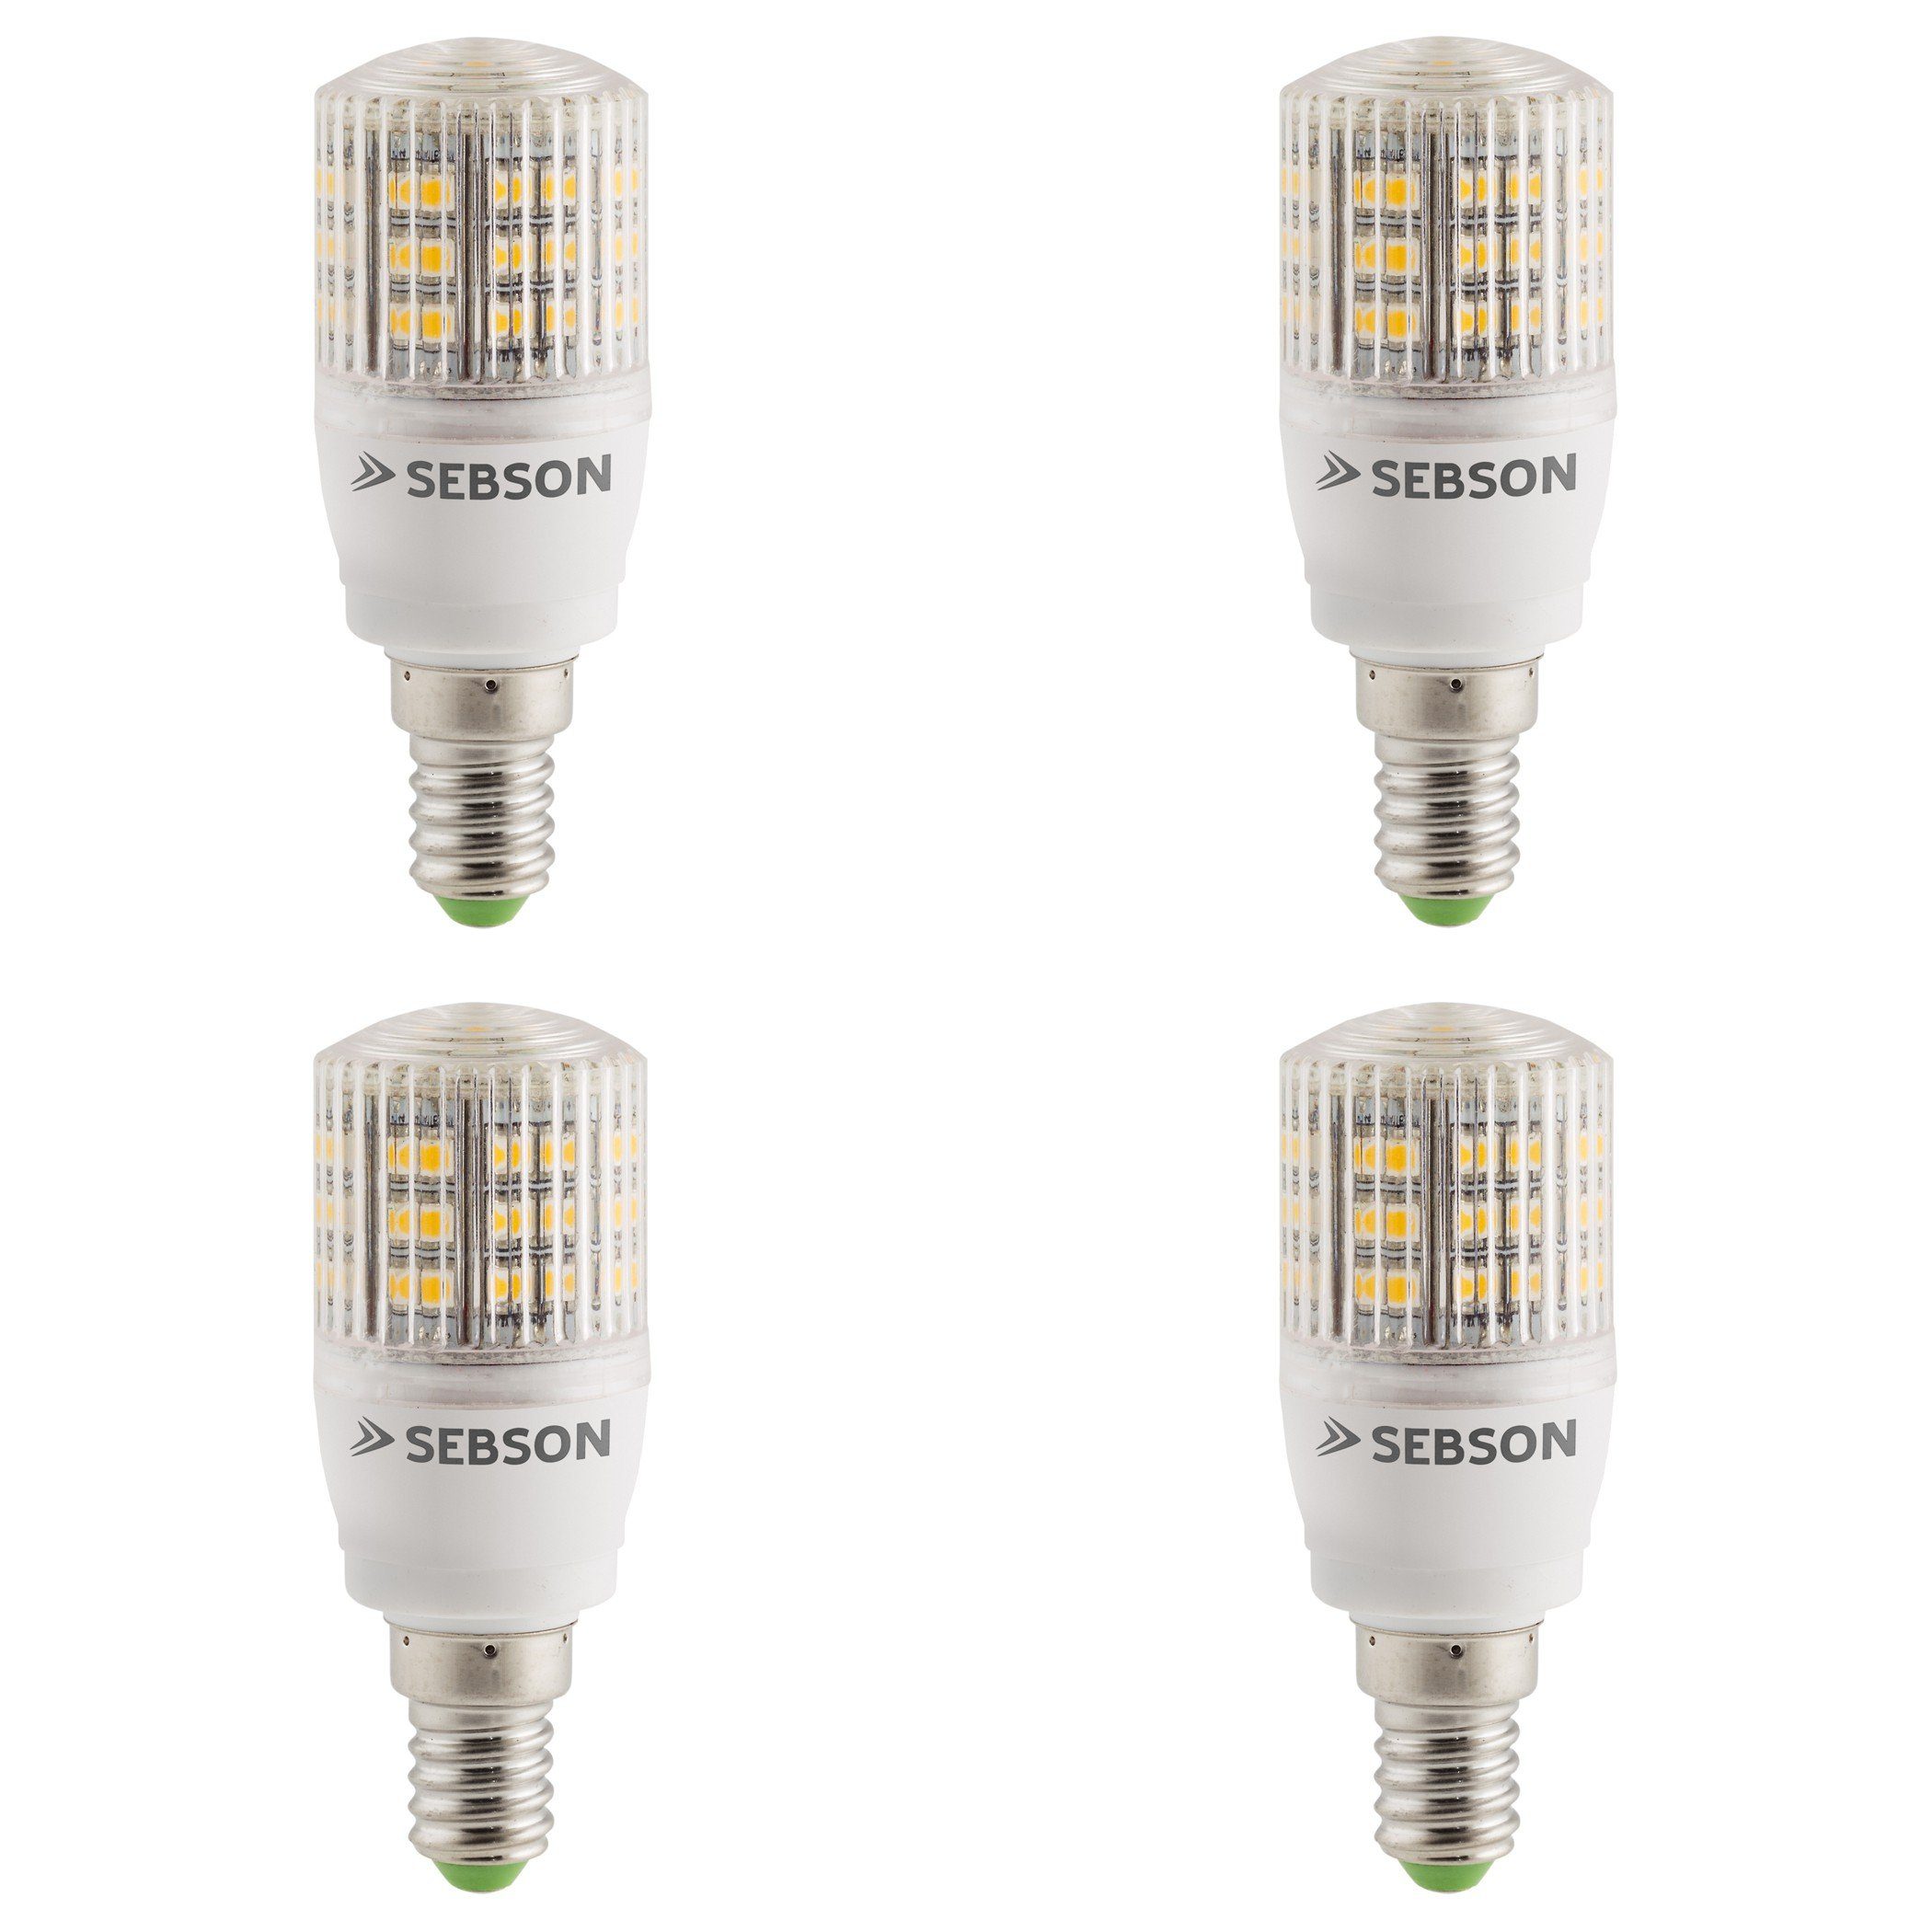 SEBSON LED-Leuchtmittel 4er Pack E14 LED 3W Lampe  240lm warmweiß - Leuchtmittel 280°